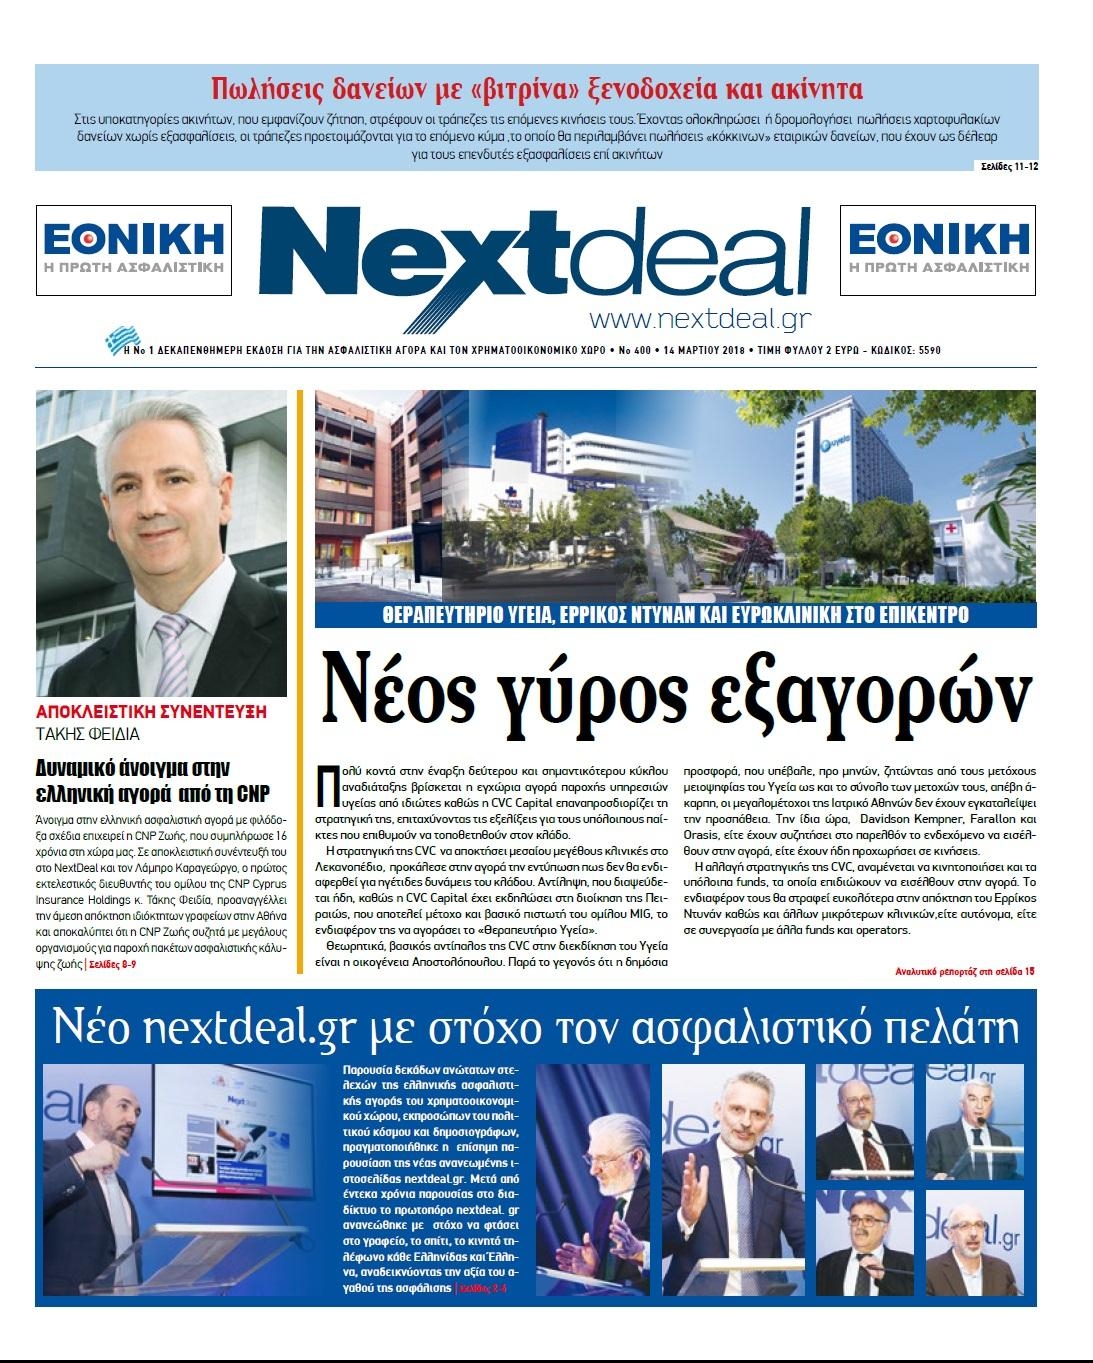 Πρωτοσέλιδο εφημερίδας NextDeal